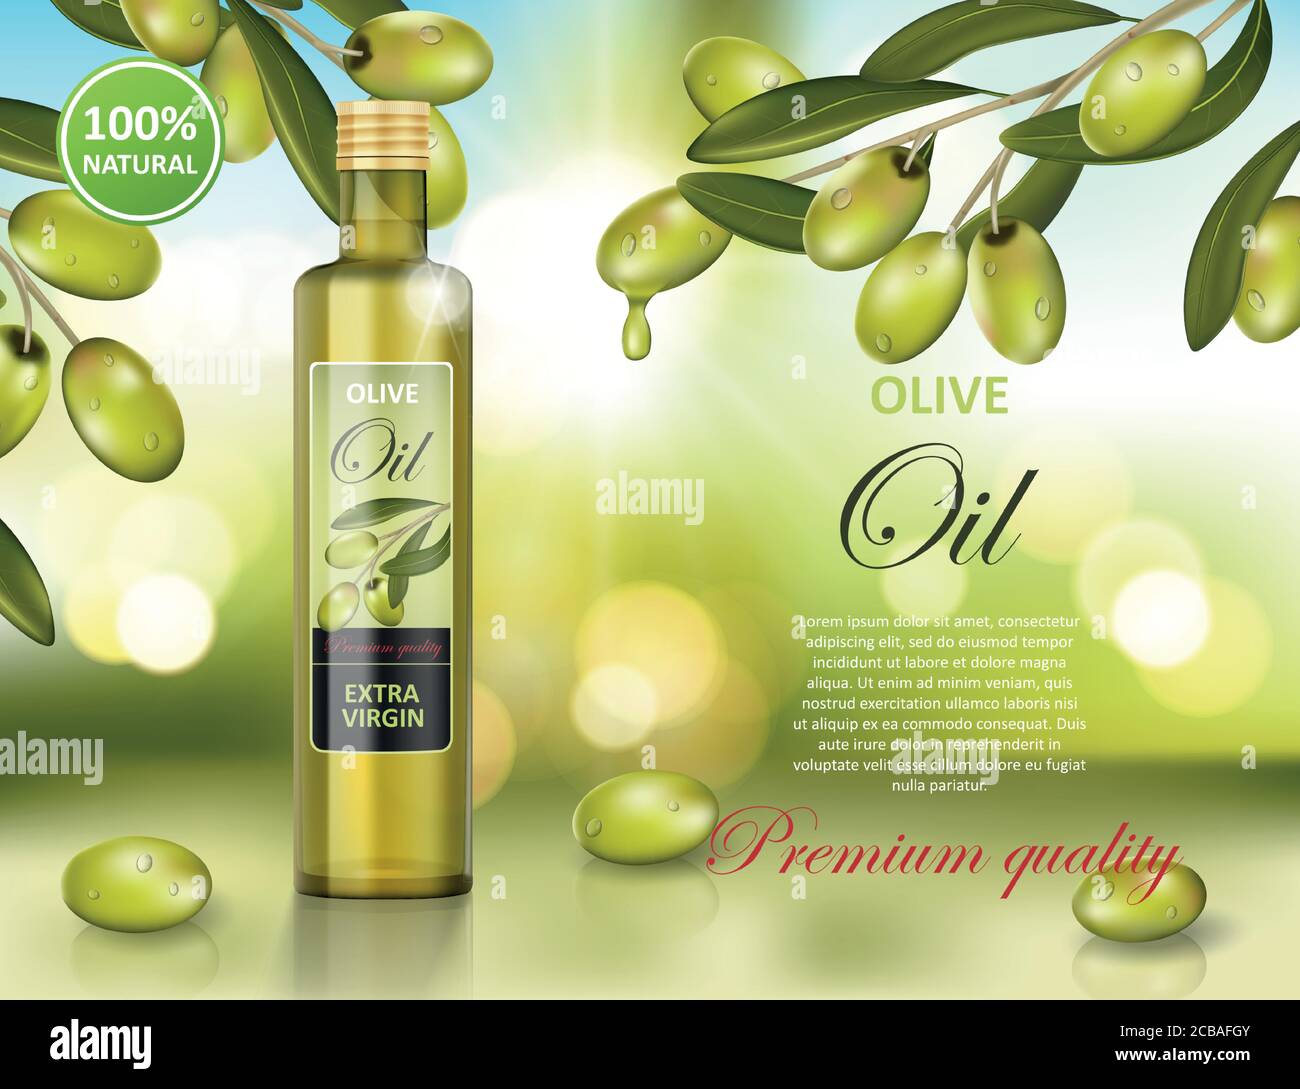 Olivenöl Flasche Design auf grün glänzenden Hintergrund. Transparent Glas Olivenöl ad, Verpackung Design. Vektor-3d-Illustration Stock Vektor